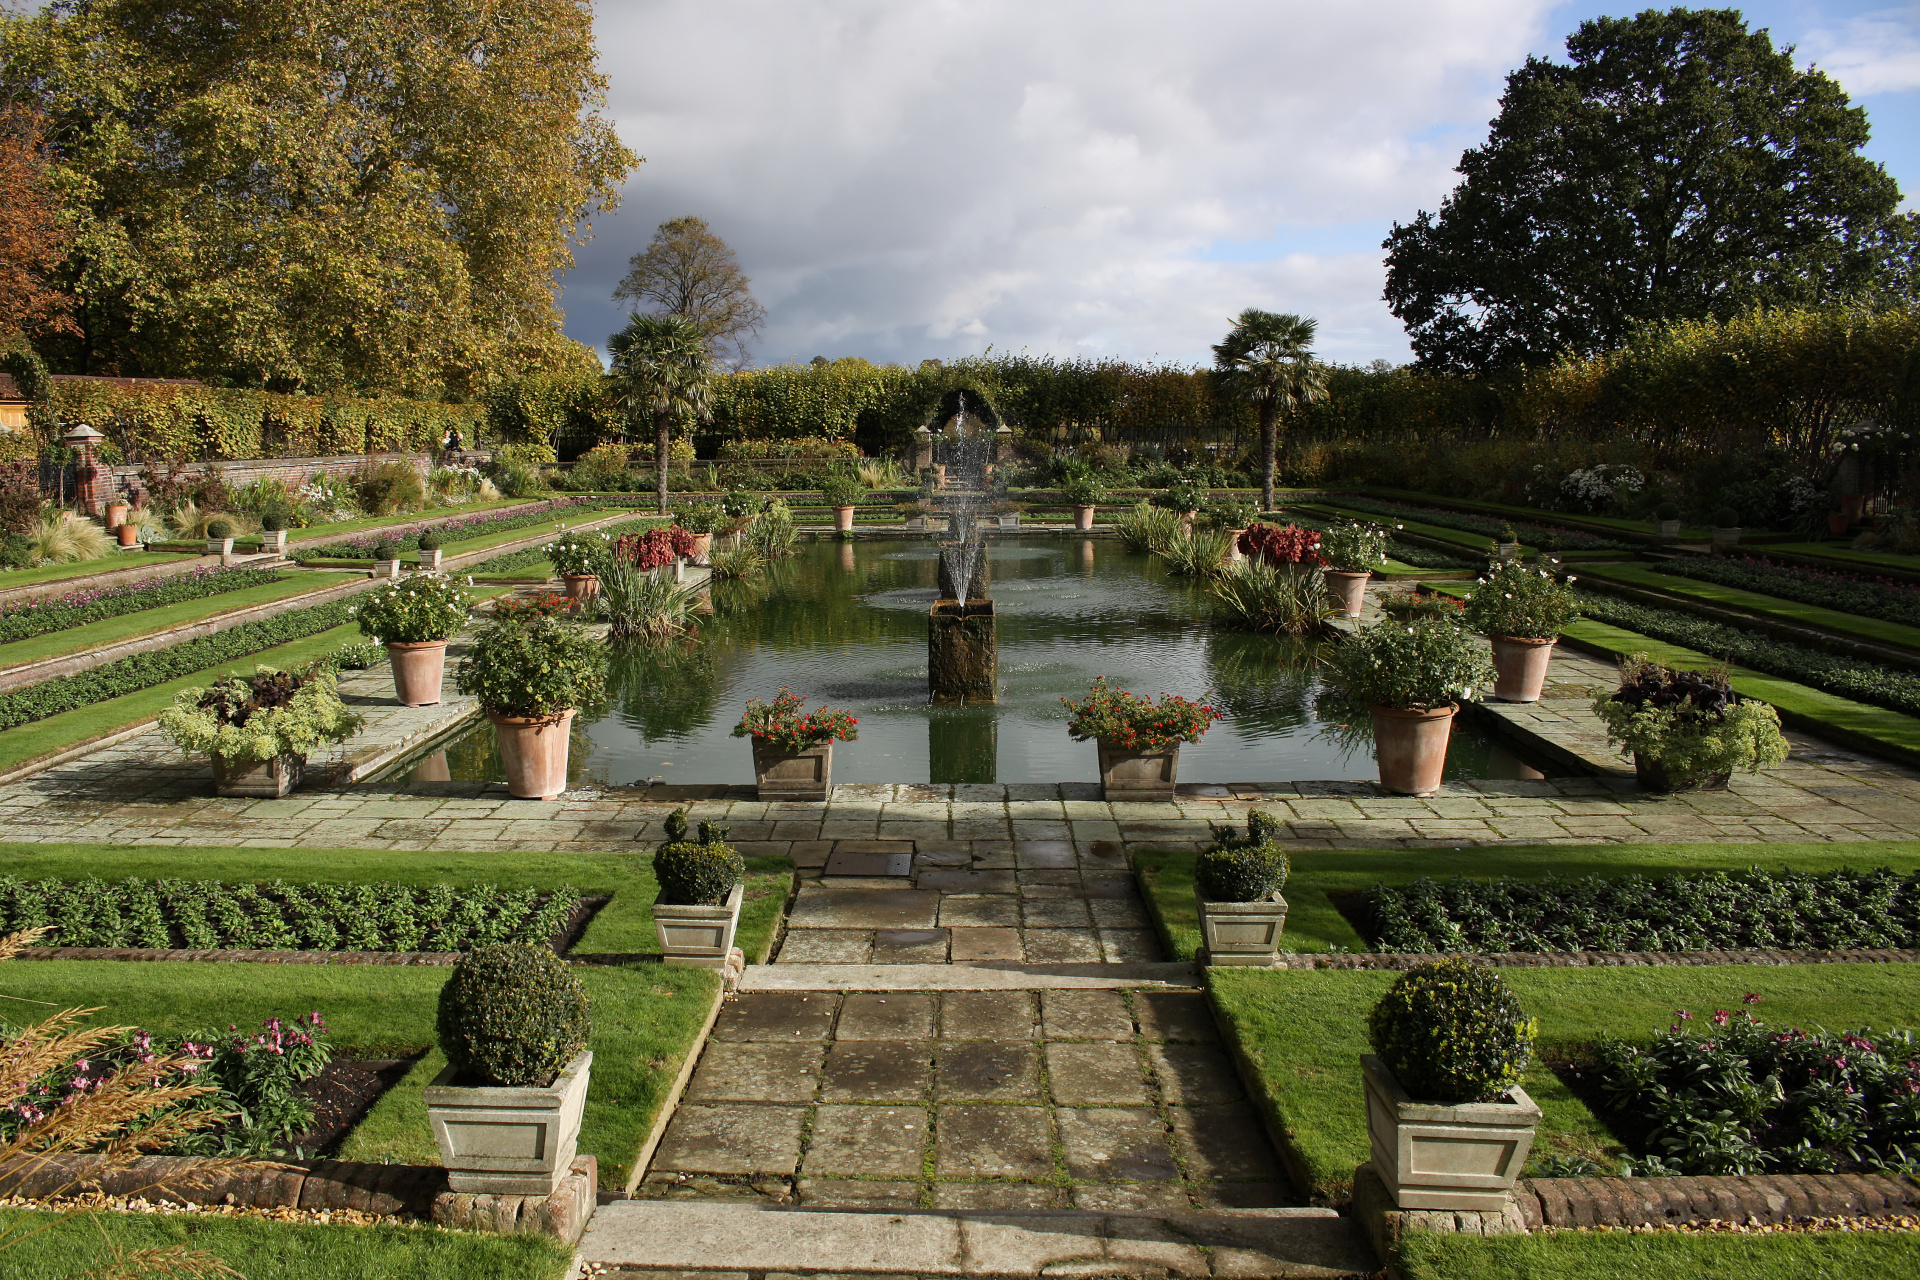 Princess Diana Memorial Garden (Podróże » Londyn » Londyn za dnia)